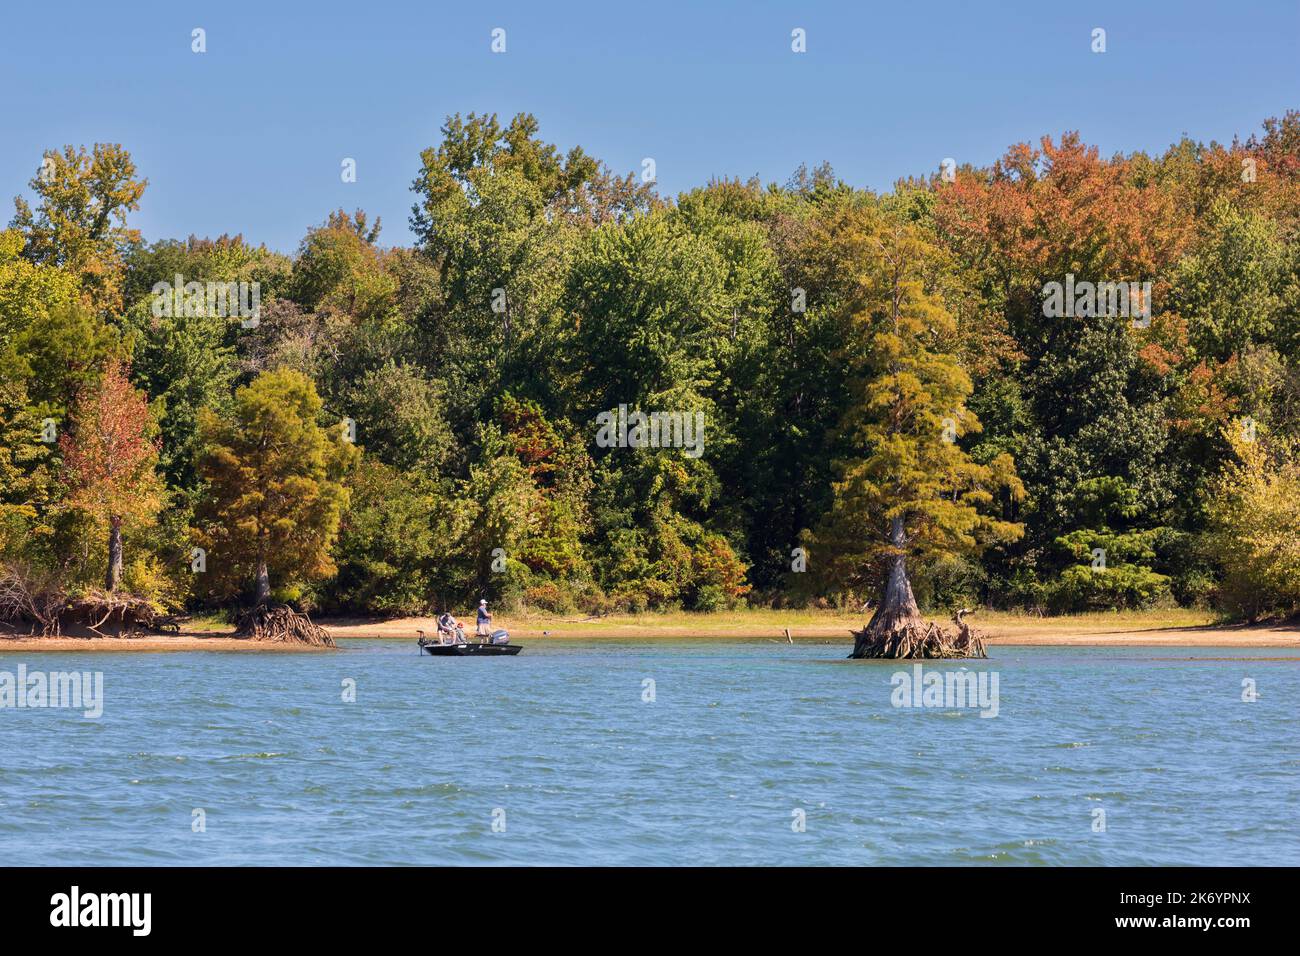 Tre uomini pescano da una piccola barca sul lago Kentucky all'inizio dell'autunno. Le foglie iniziano a cambiare colore all'inizio di ottobre. Foto Stock